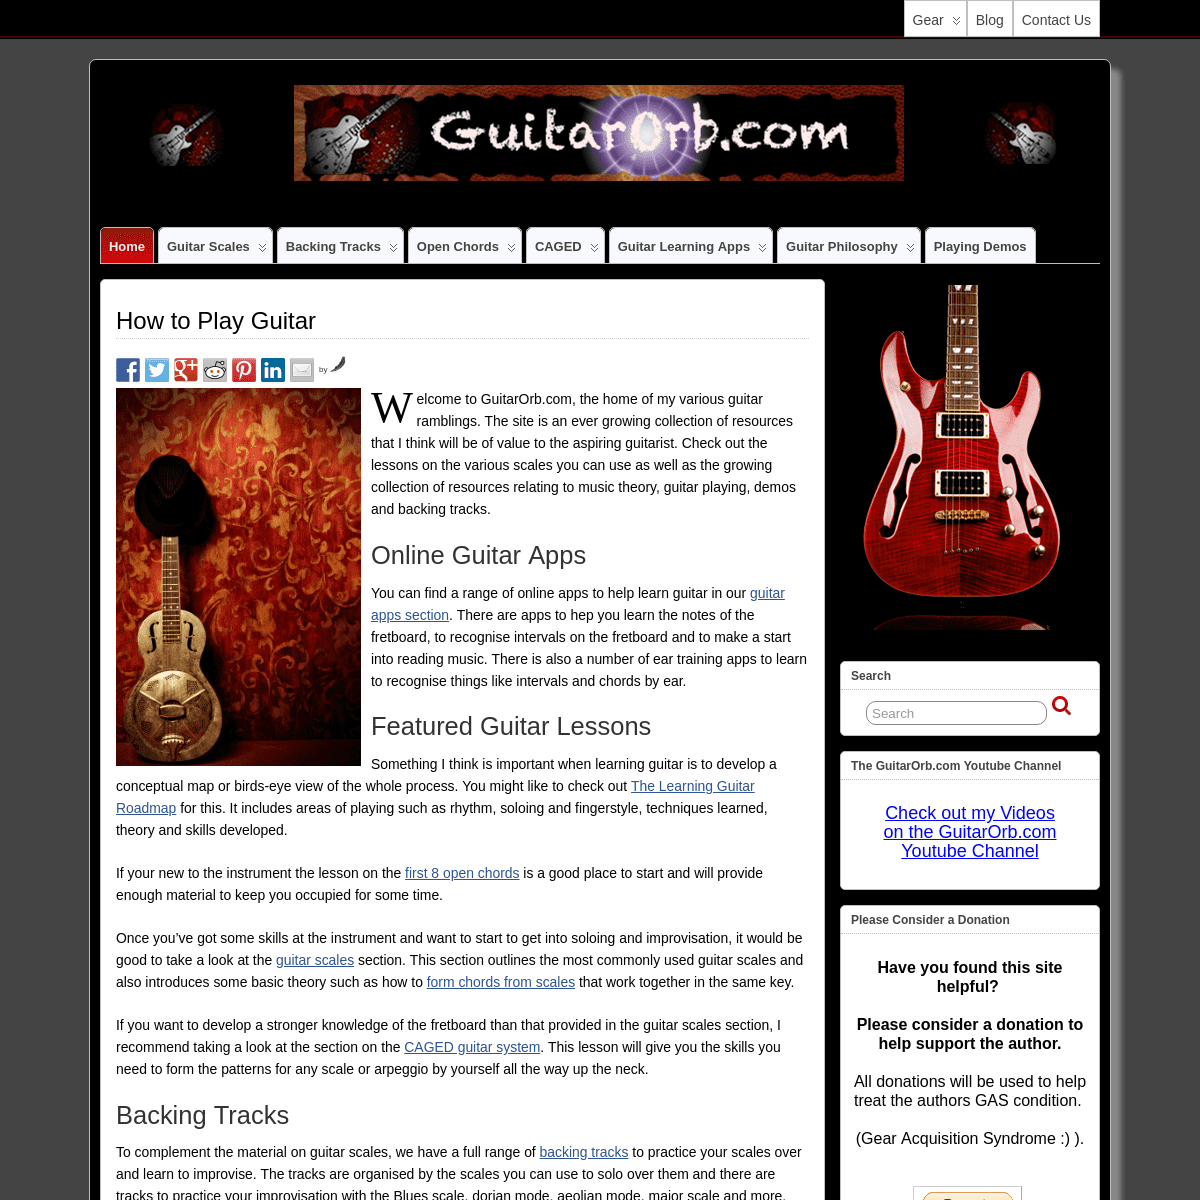 A complete backup of guitarorb.com